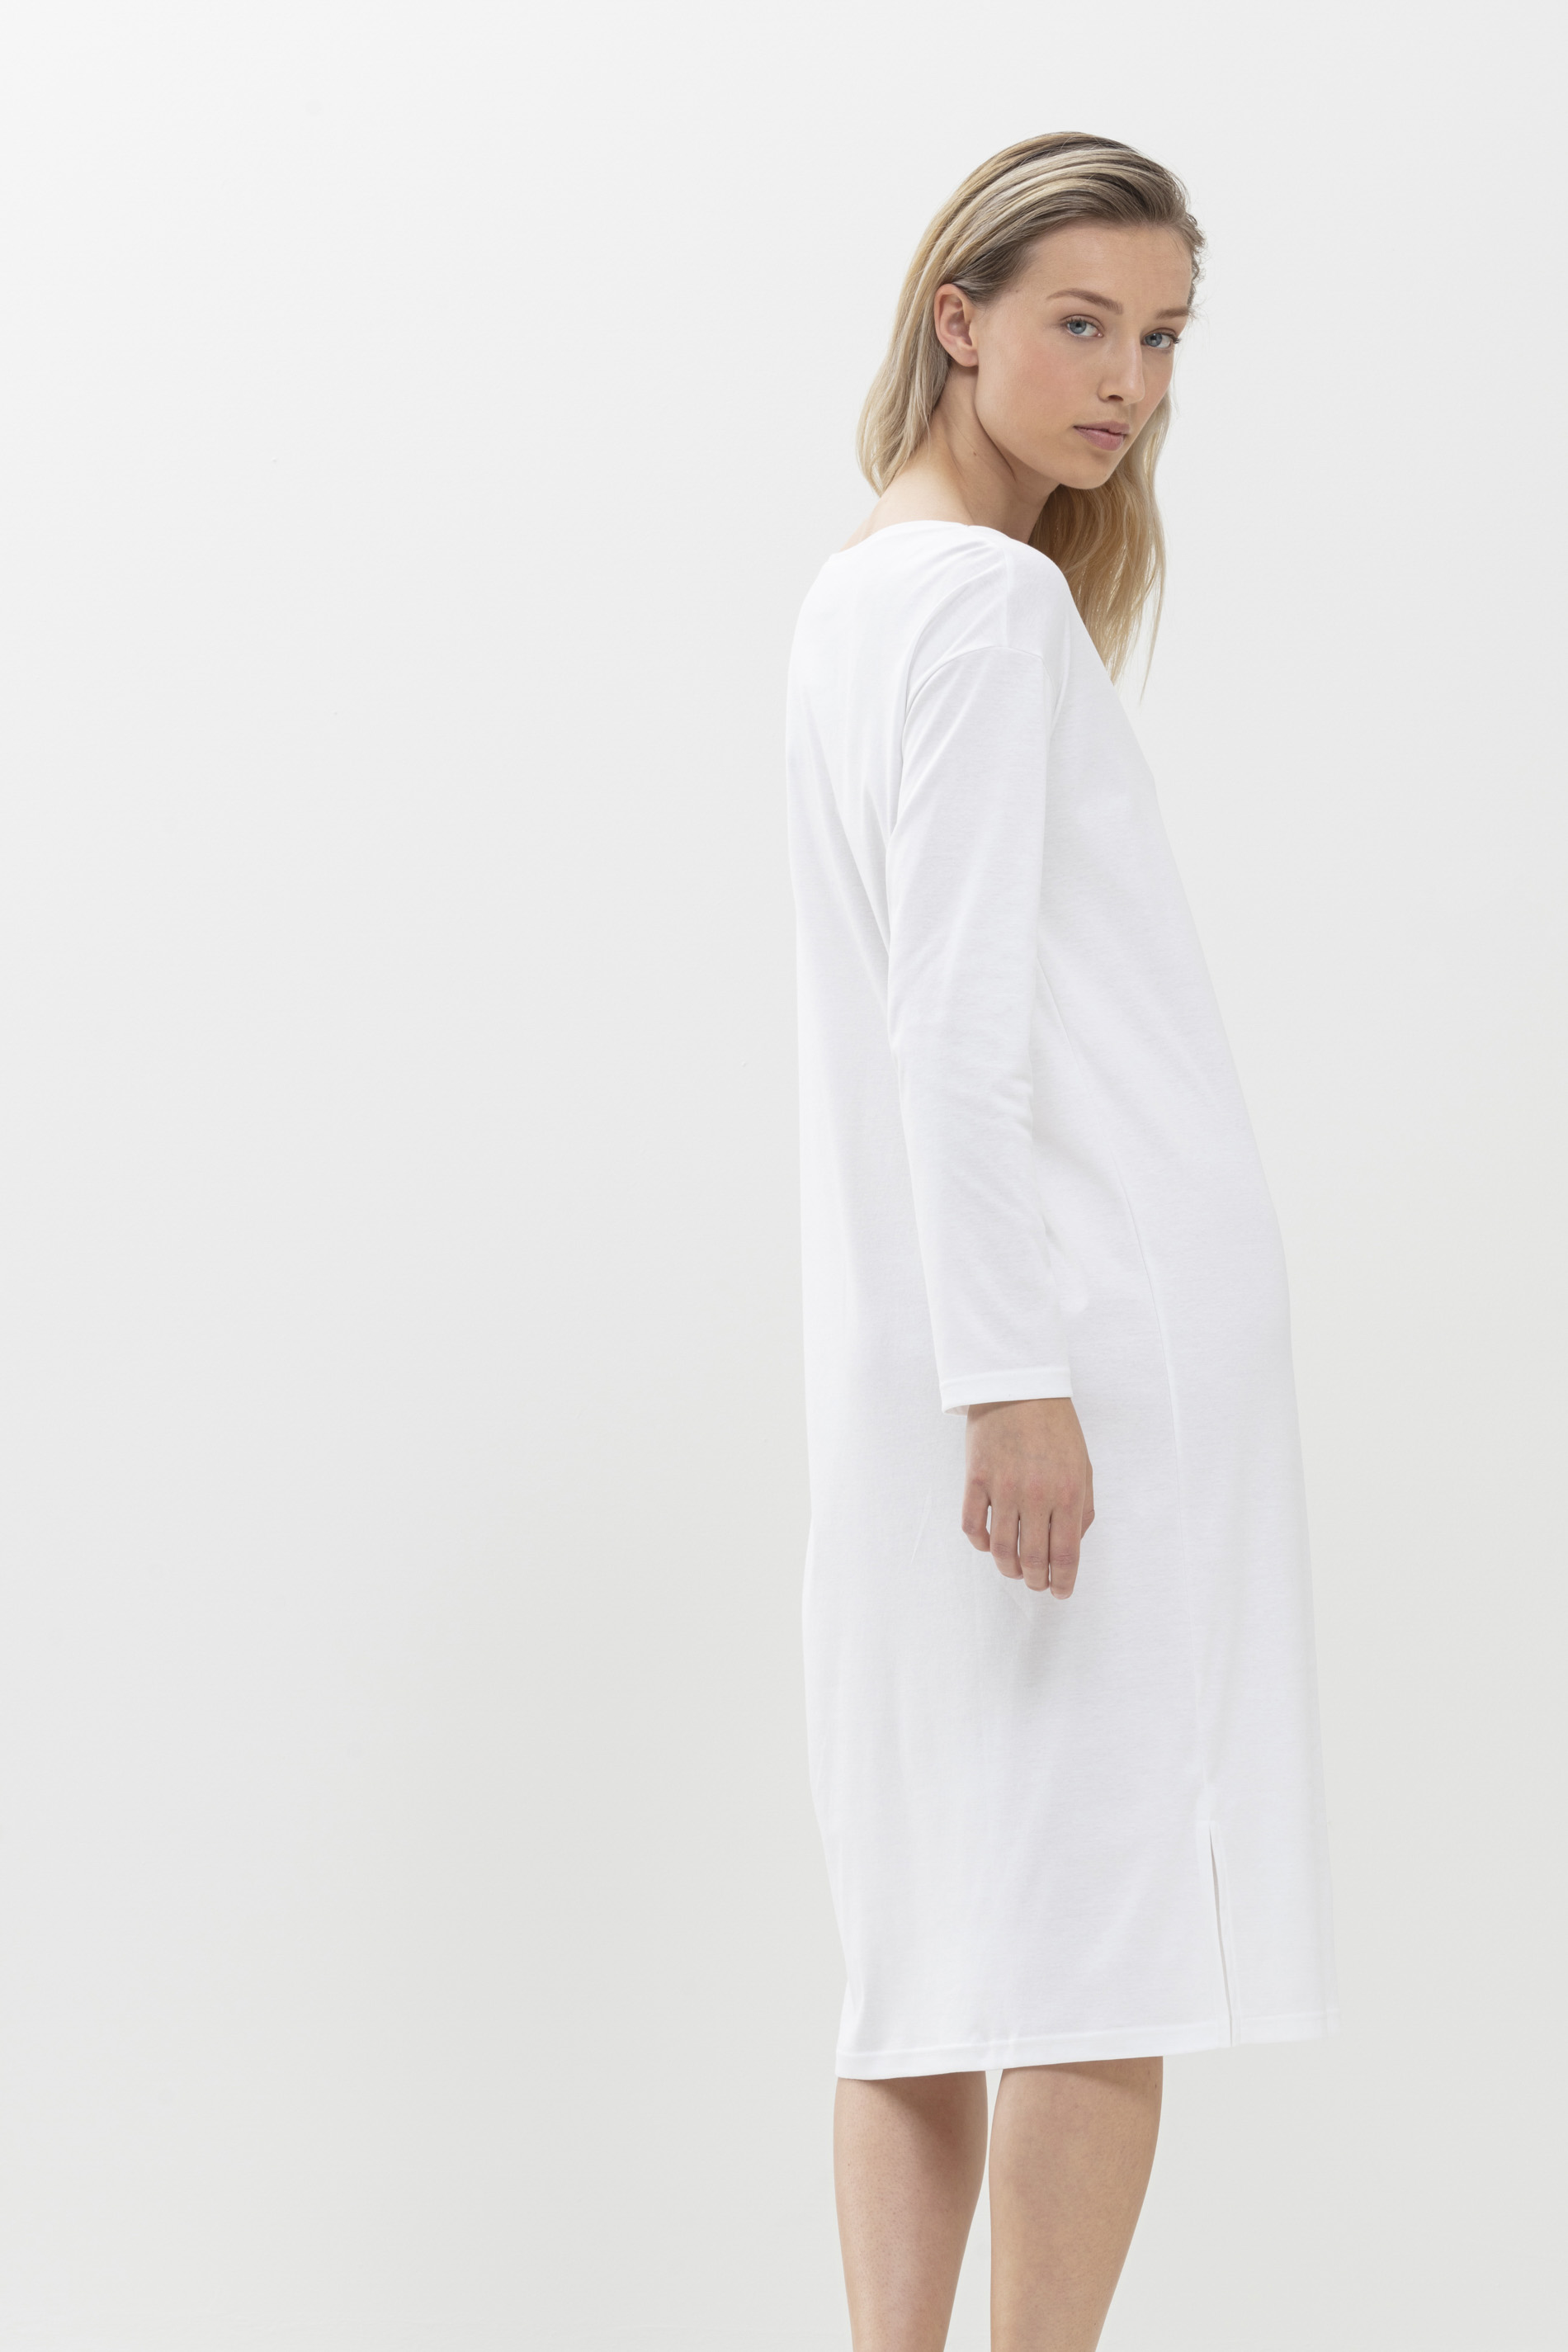 Nachthemd Wit Serie Sleepsation Achteraanzicht | mey®